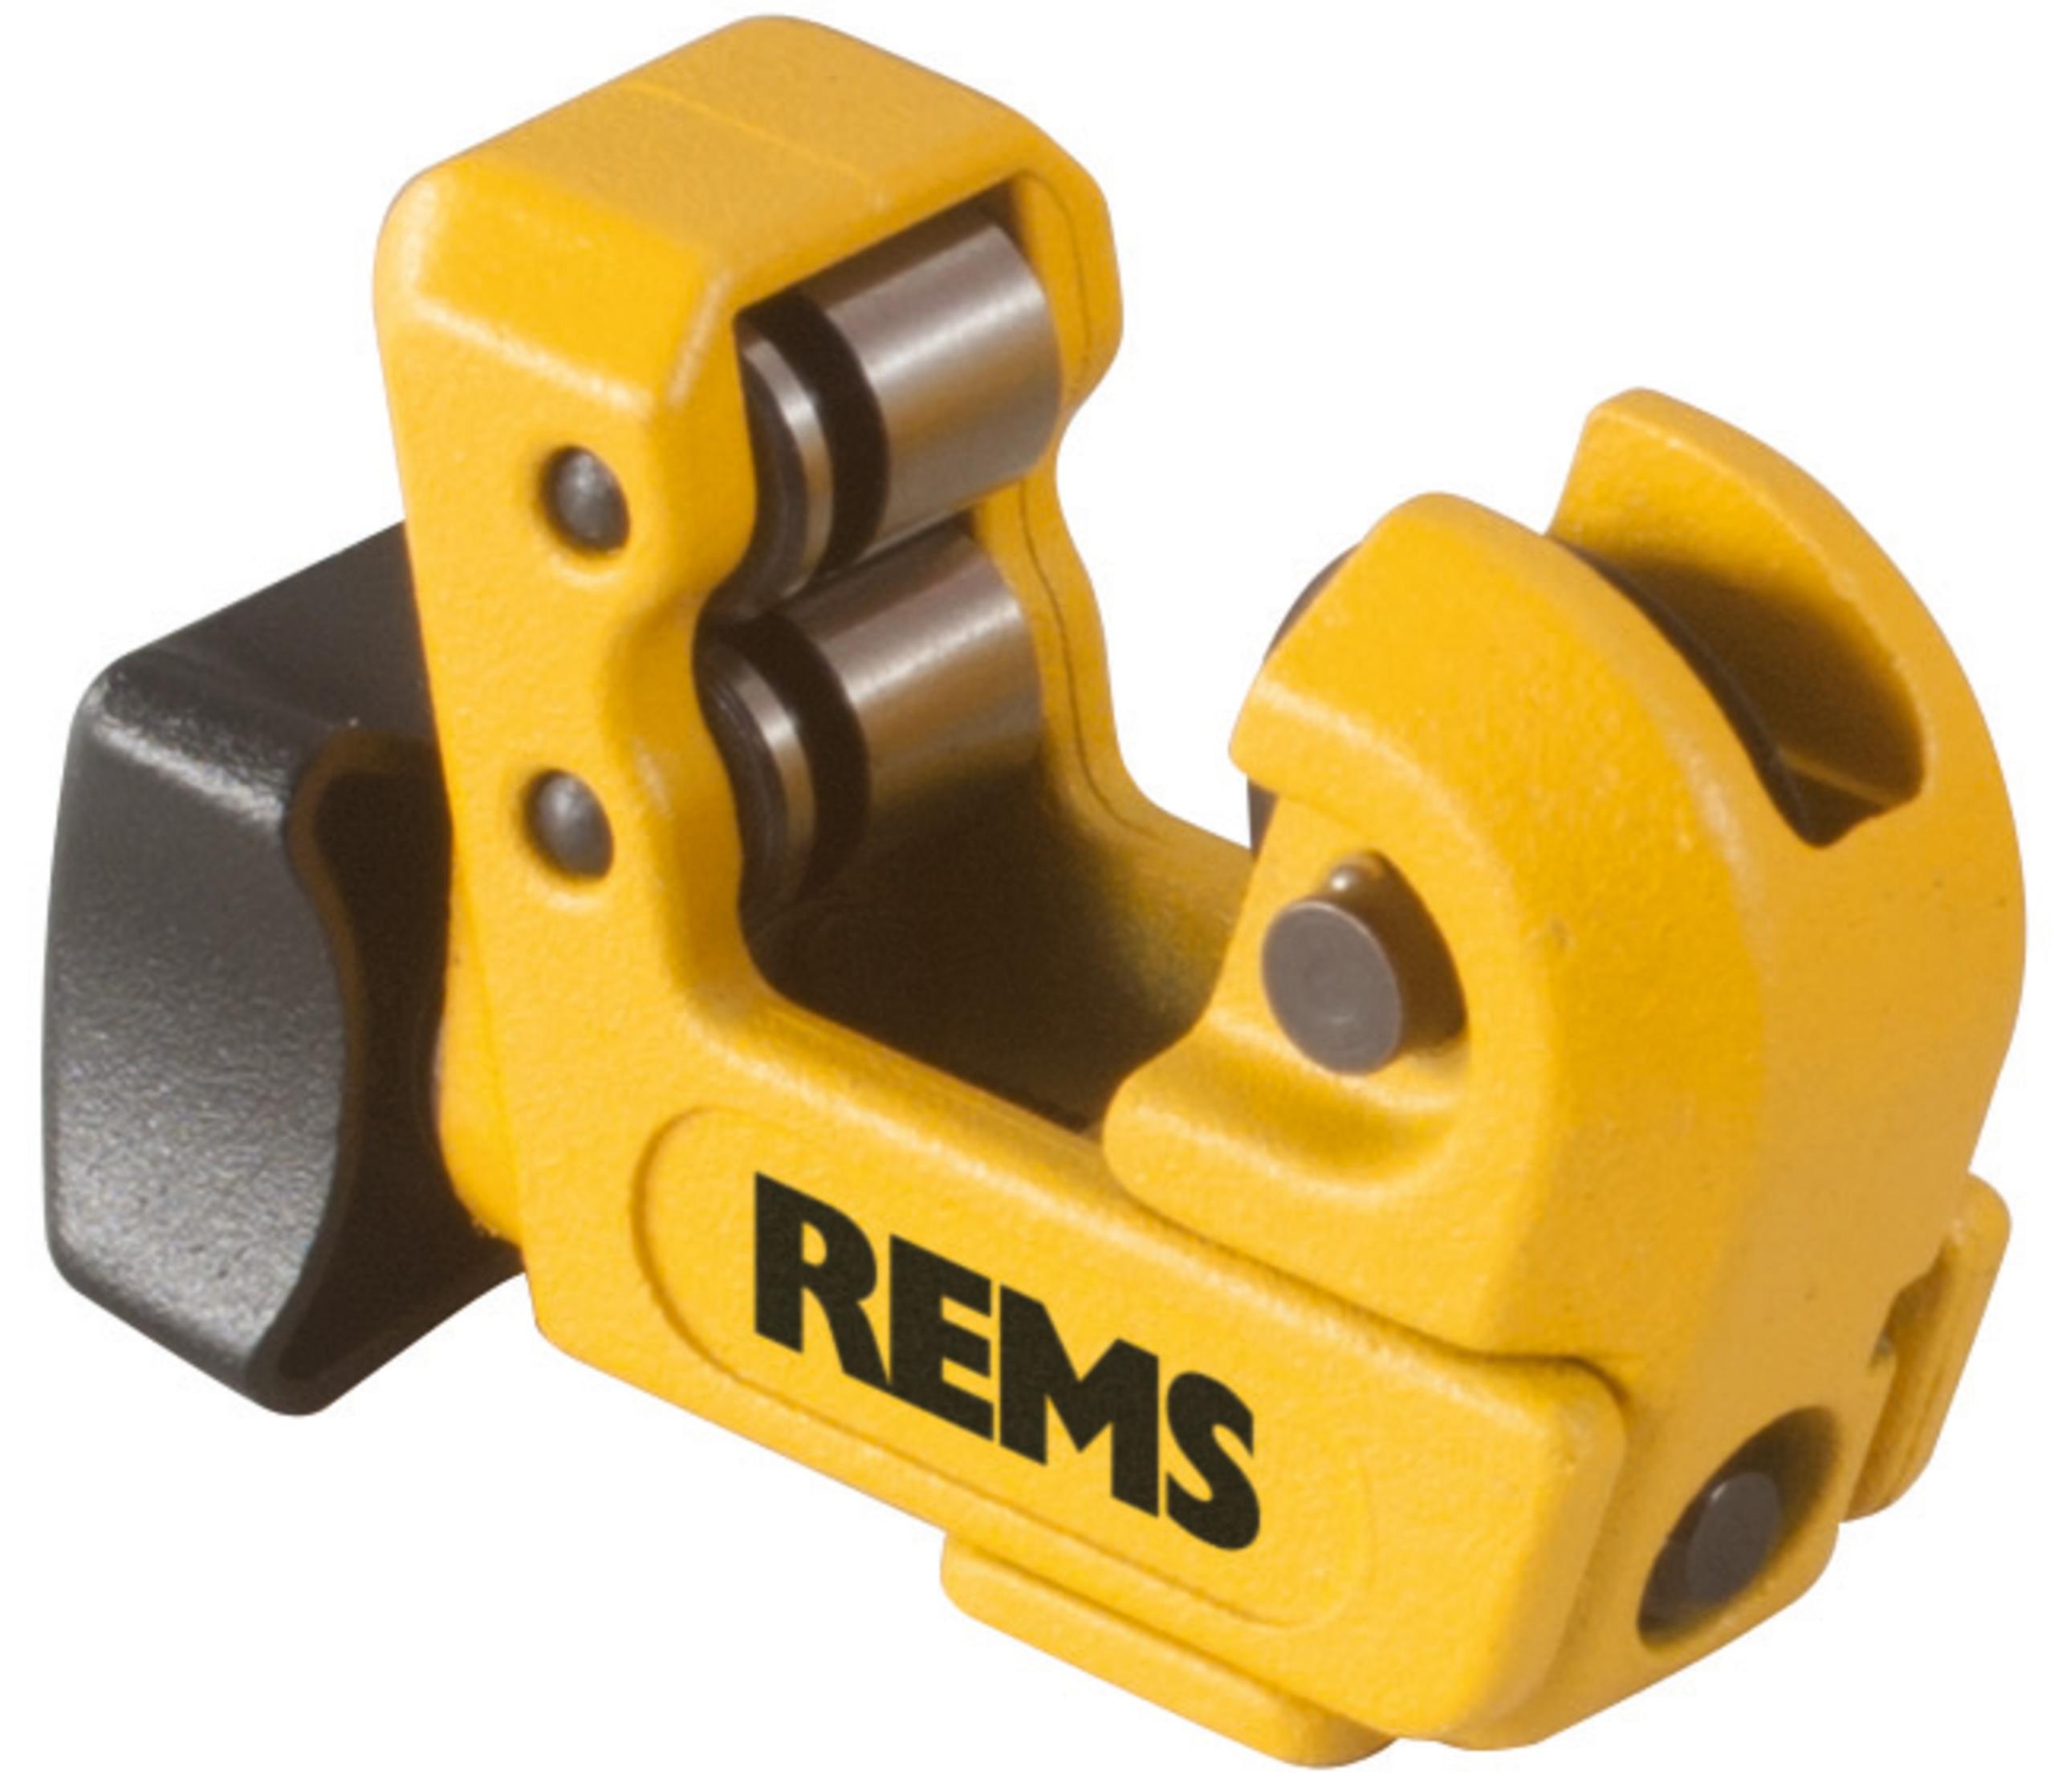 Tagliatubi professionale per tubi in rame e acciaio inox REMS 113200 R RAS Cu-INOX 3-16 